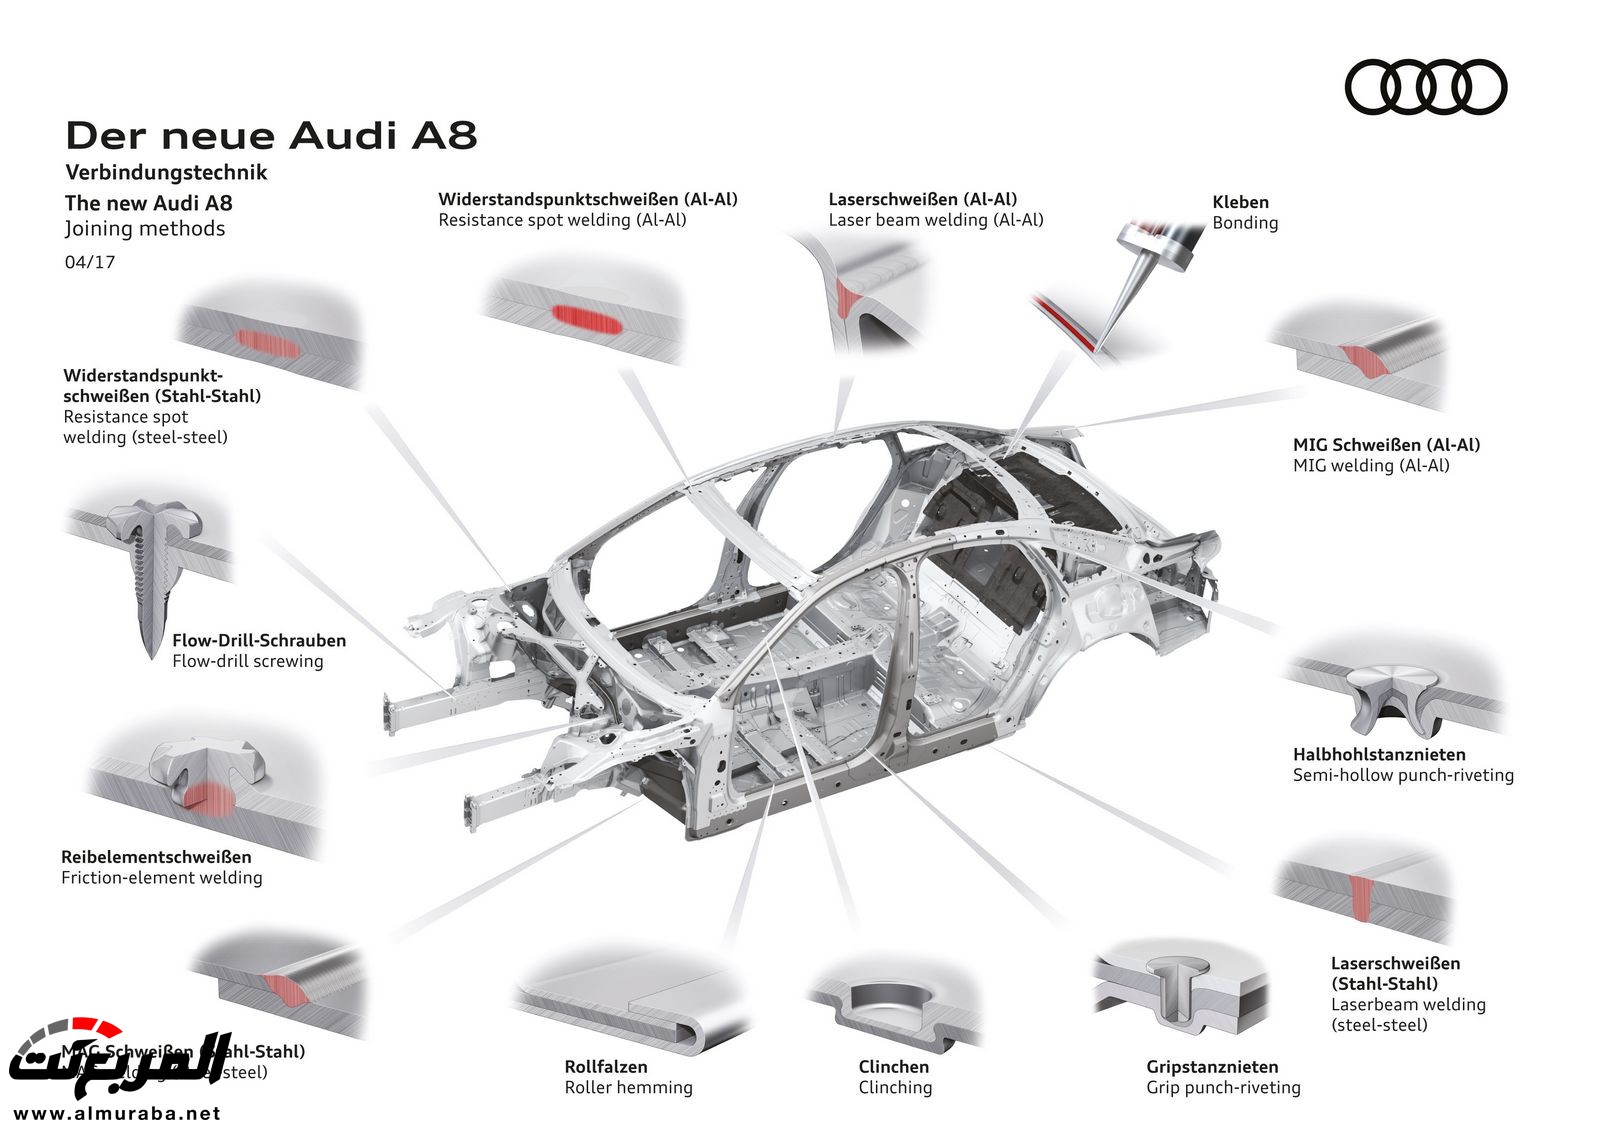 أودي A8 2018 الجديدة كلياً تكشف نفسها بتصميم وتقنيات متطورة "معلومات + 100 صورة" Audi A8 54